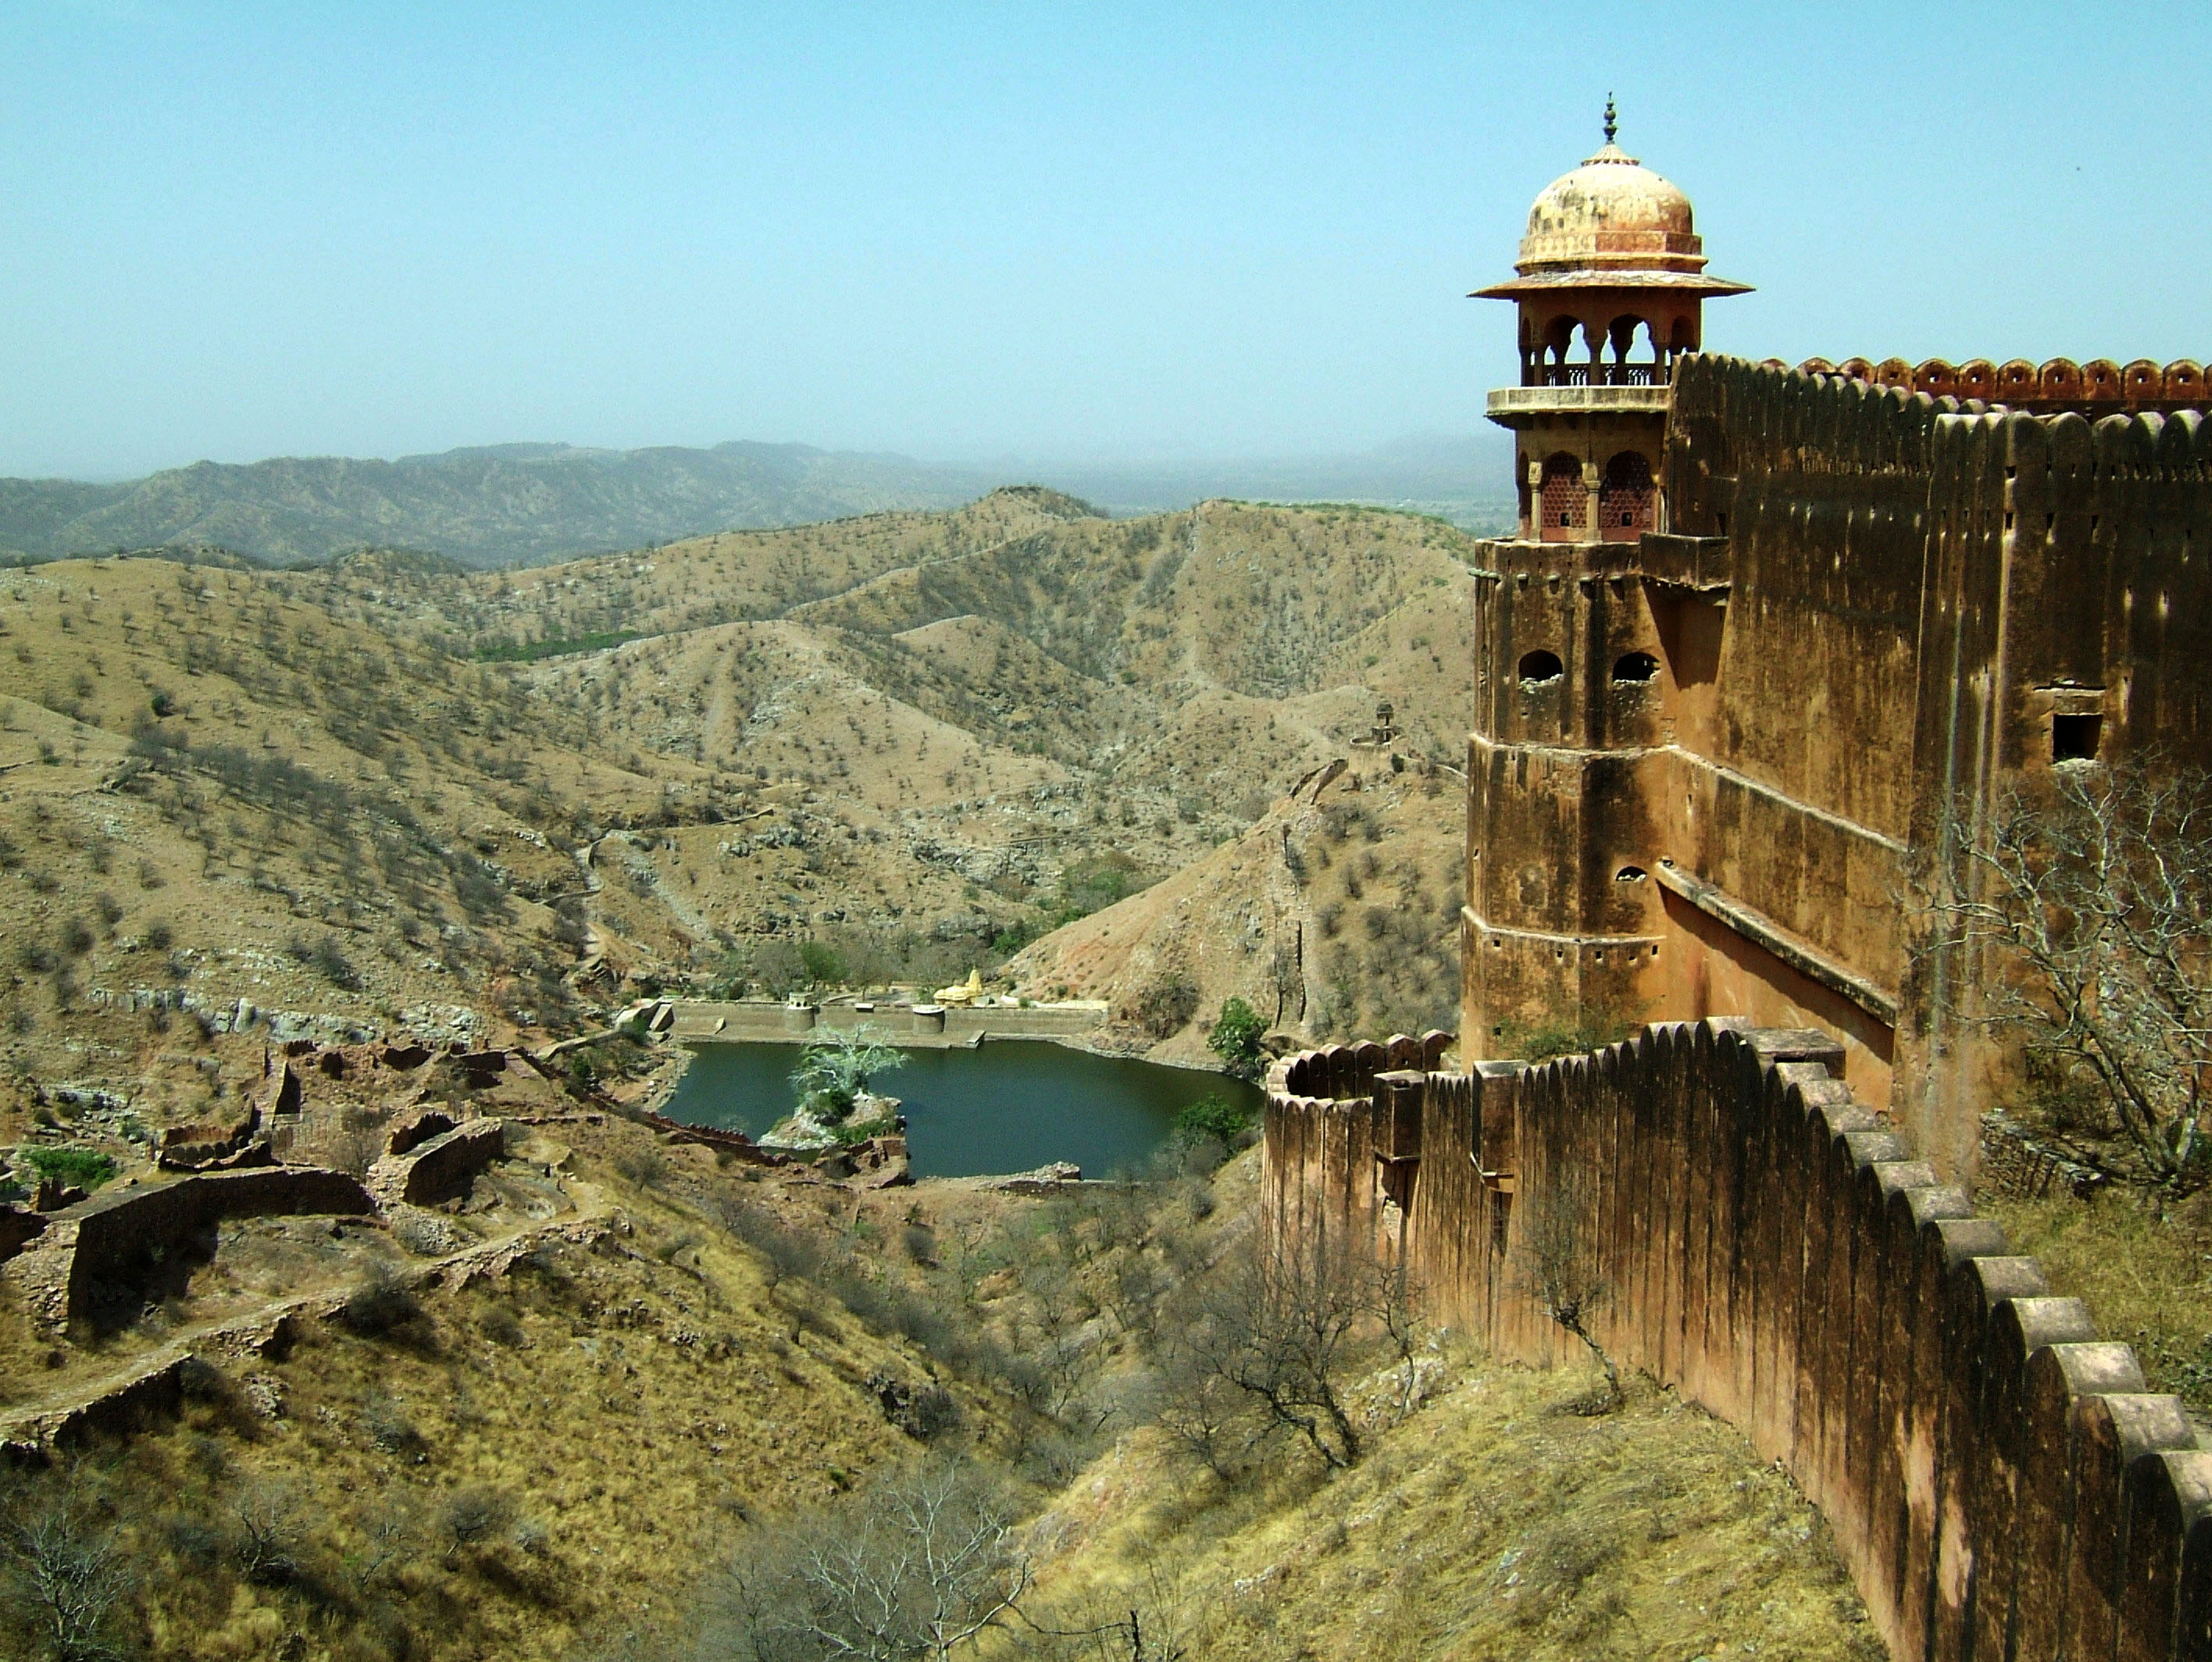 Rajasthan-Jaipur-Jaigarh-Fort-perimeter-walls-Apr-2004-01